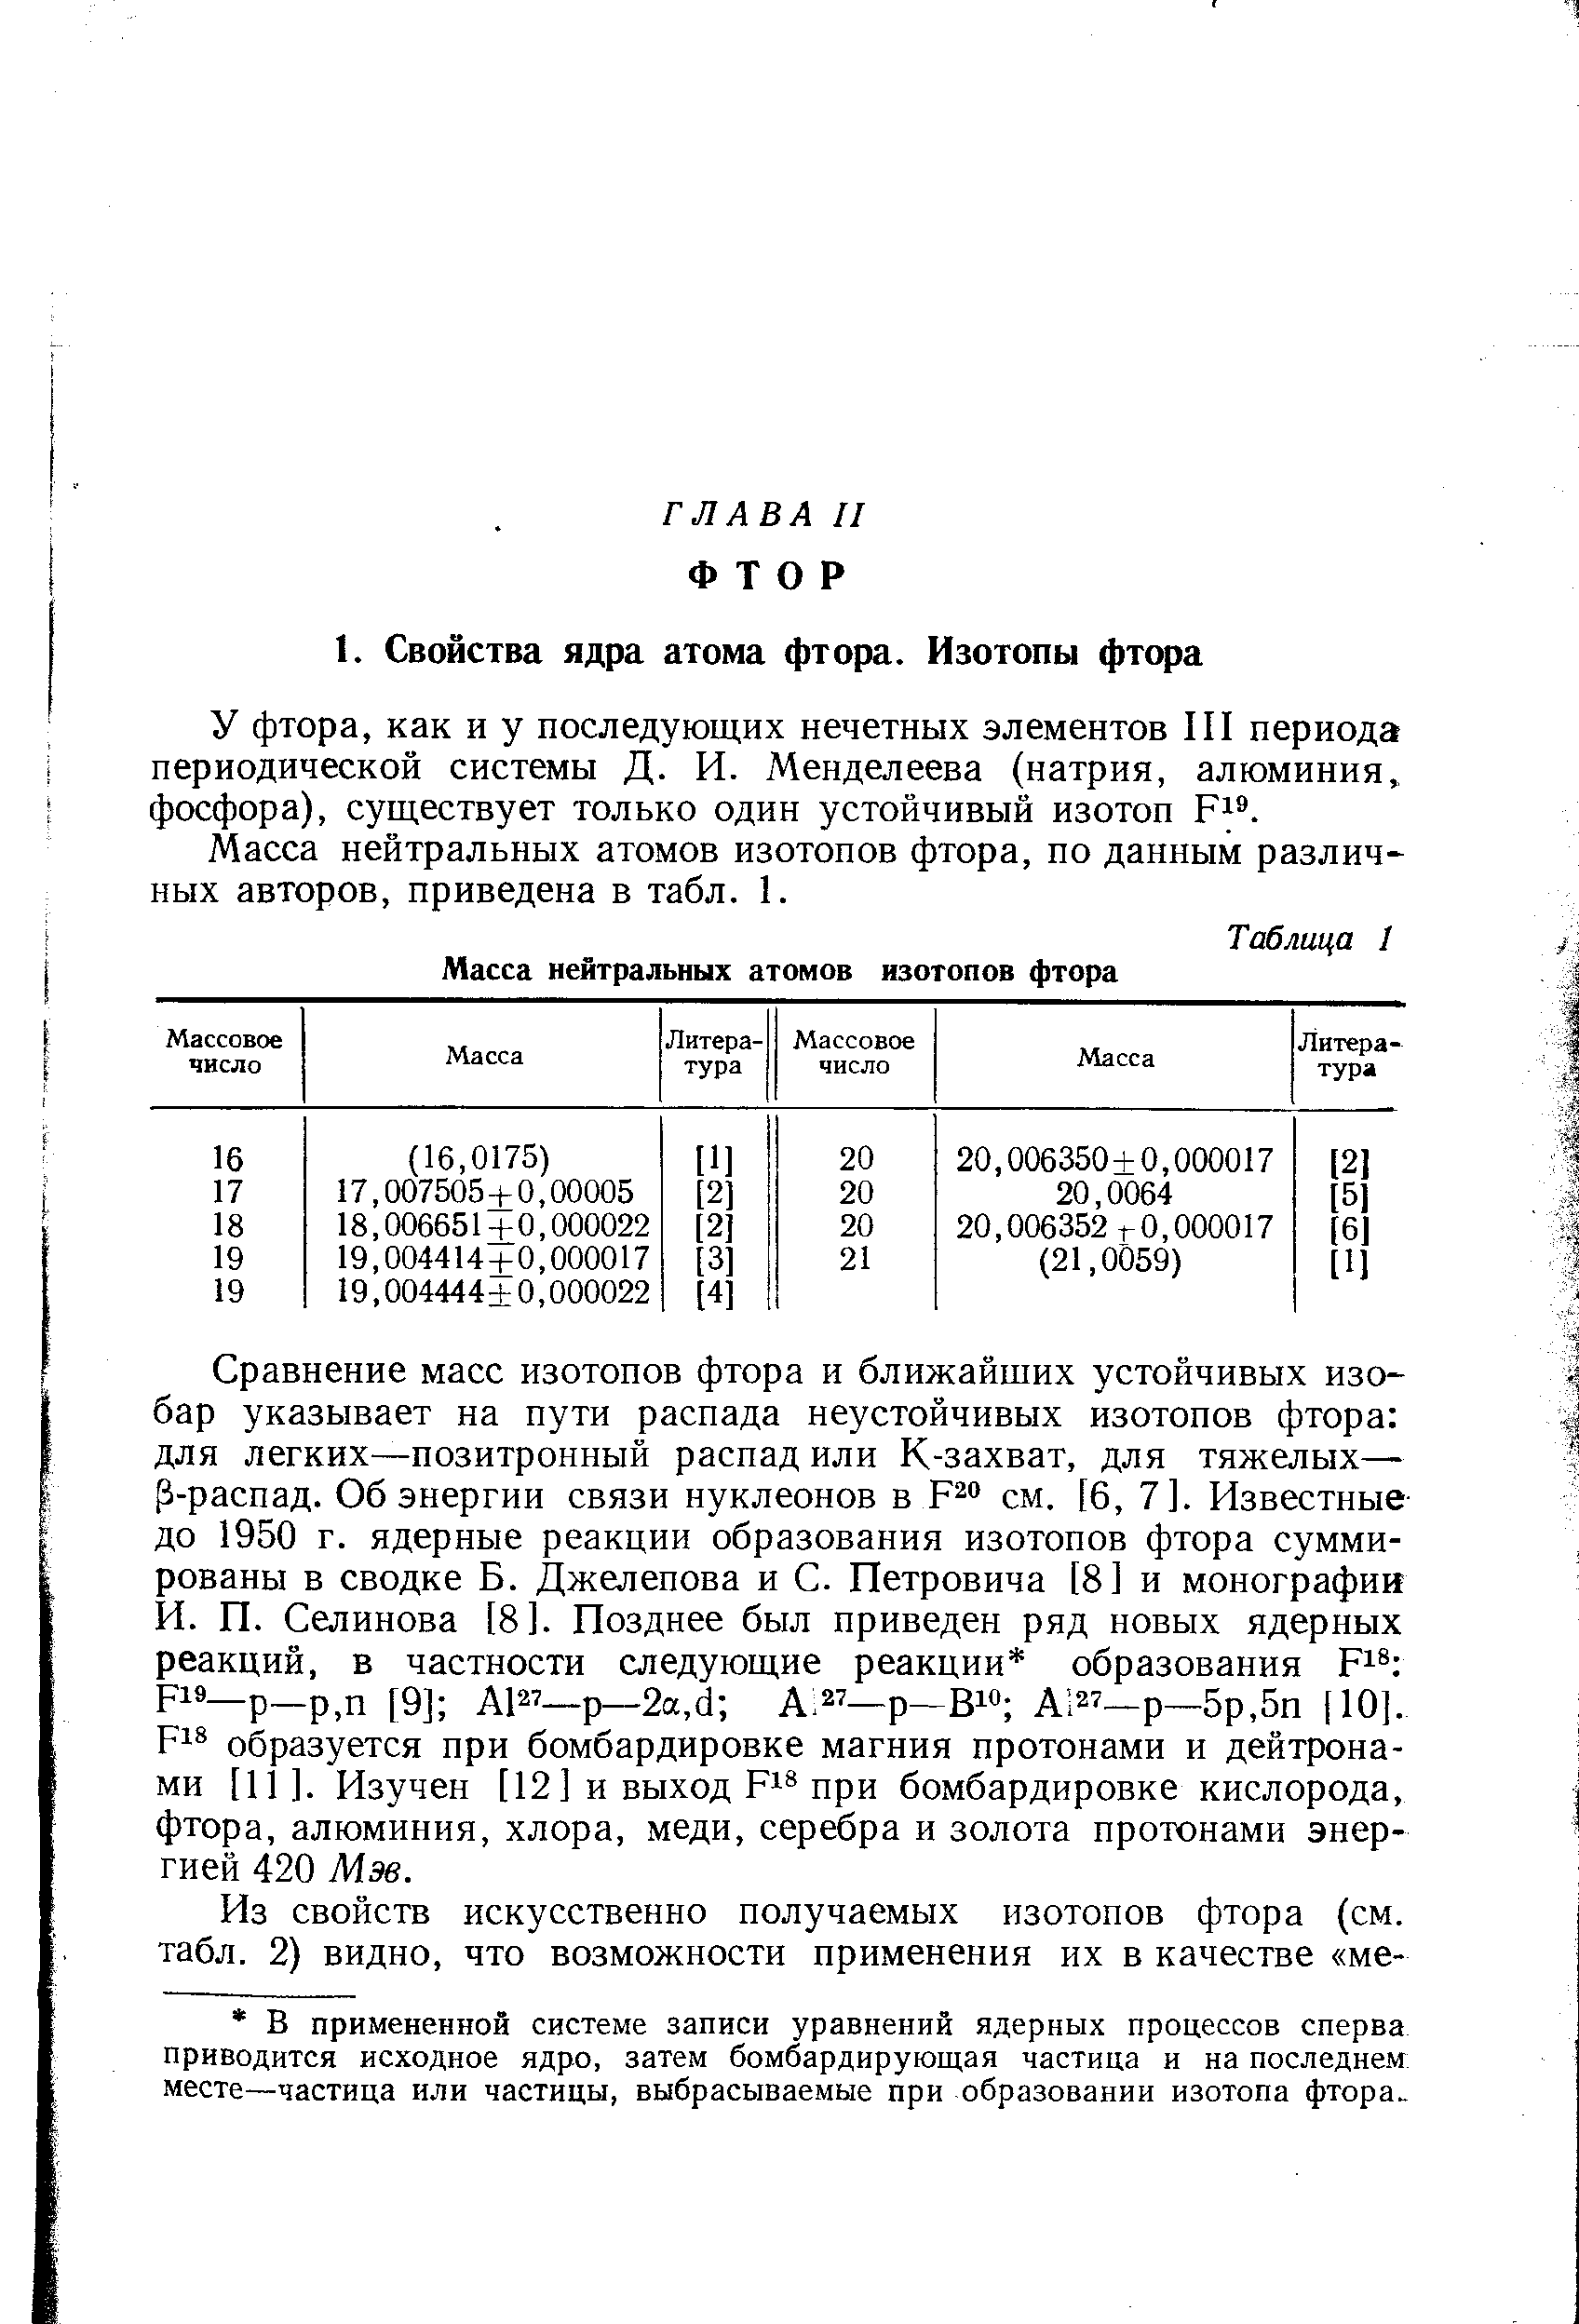 У фтора, как и у последующих нечетных элементов III периода периодической системы Д. И. Менделеева (натрия, алюминия, фосфора), существует только один устойчивый изотоп F .